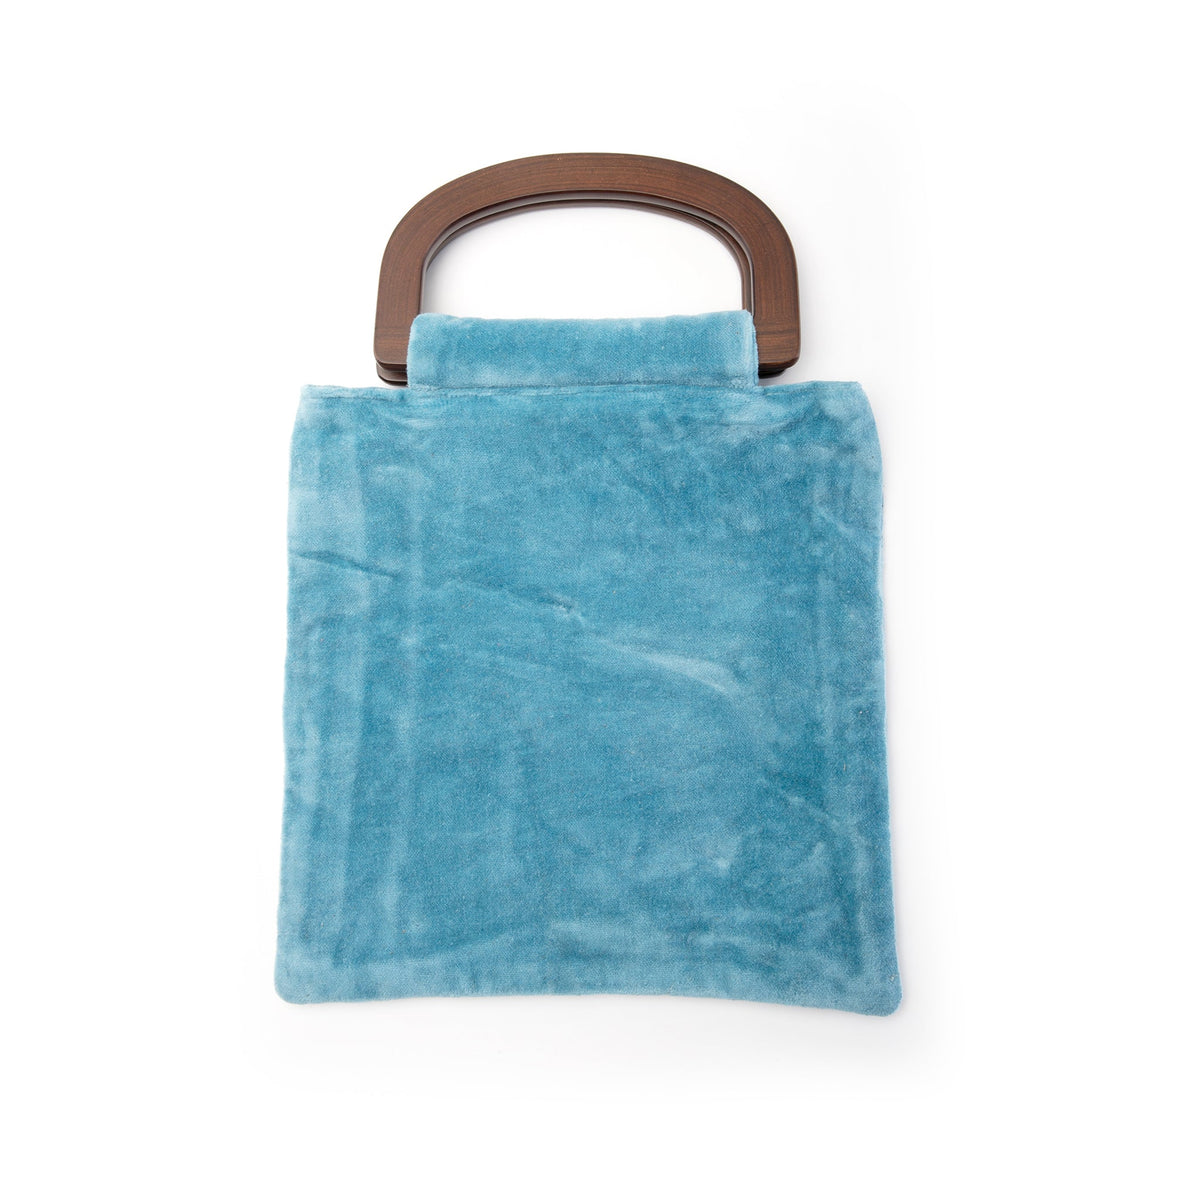 Embroidered Blue Beetle Handbag